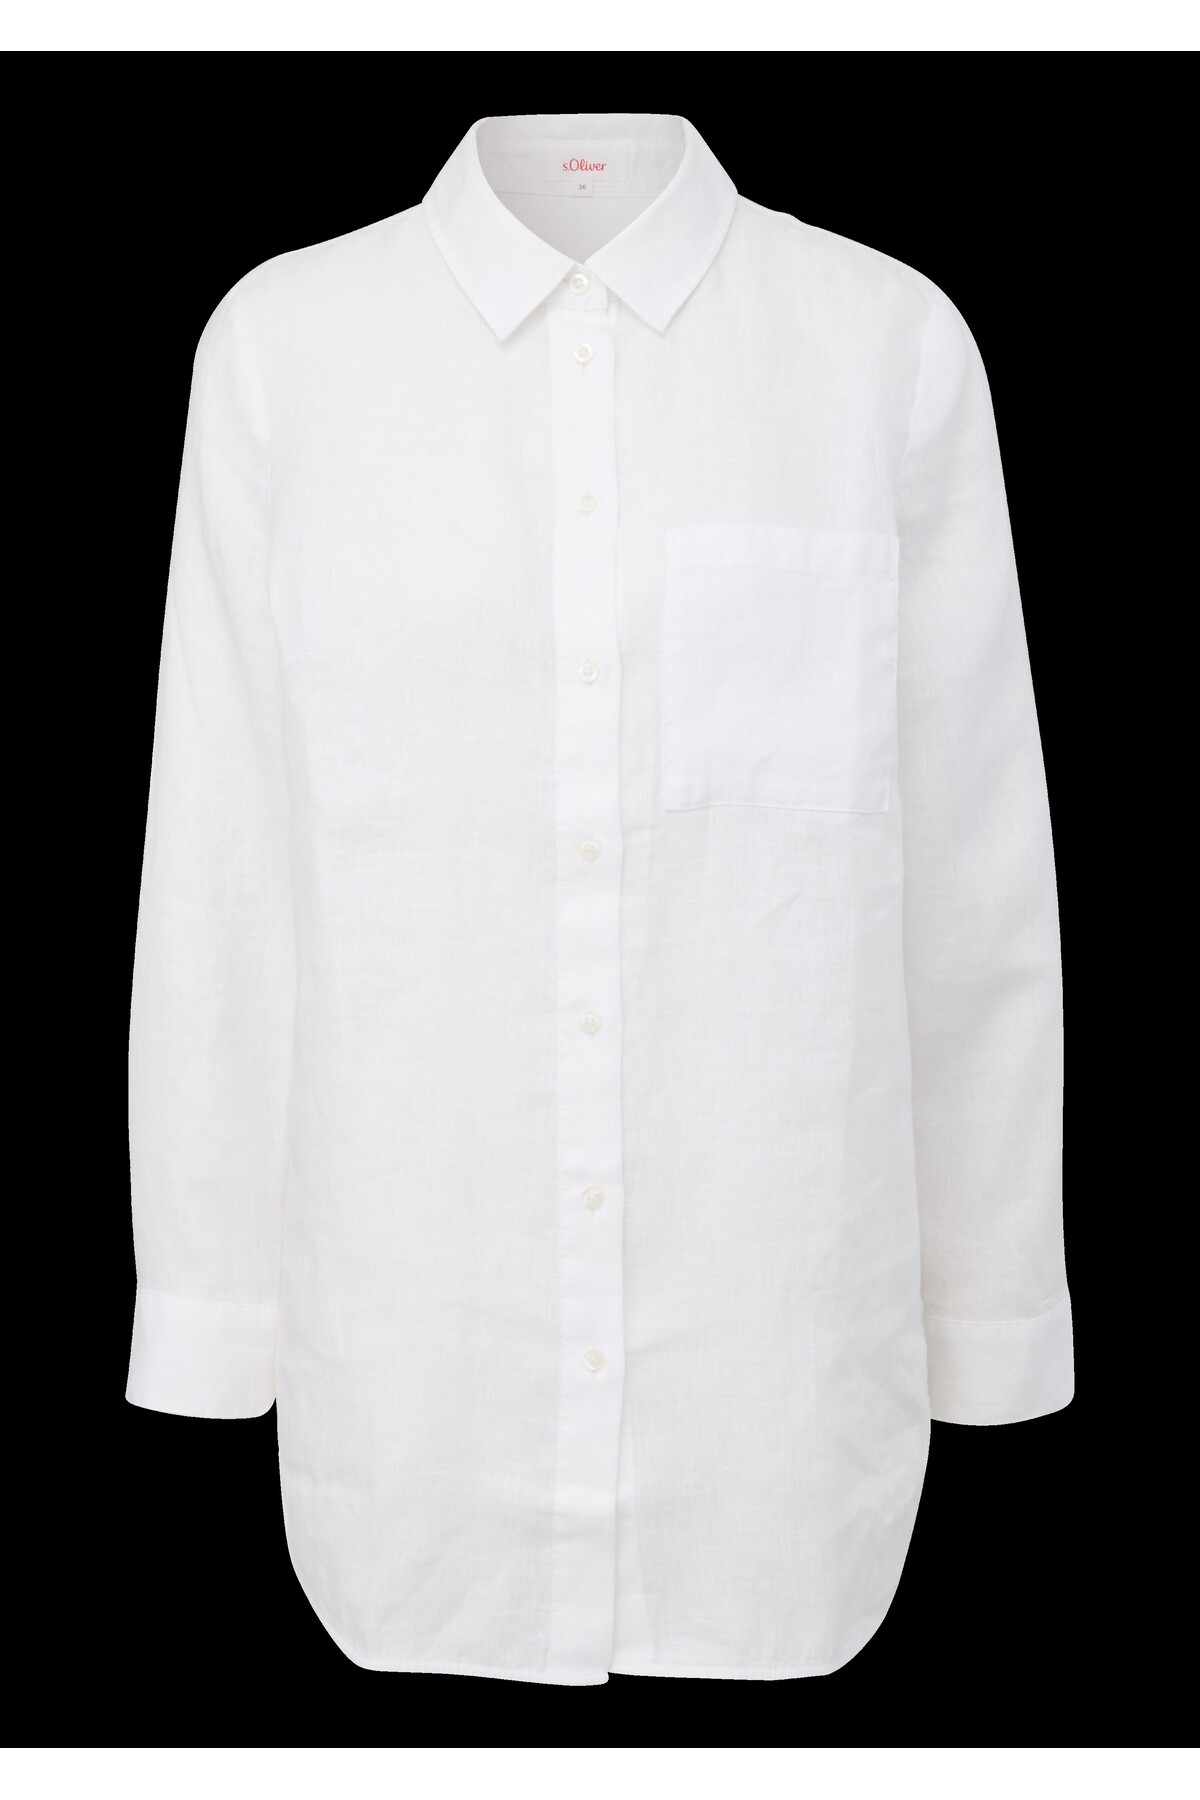 Блузка для женщин/девочек s.Oliver, белый